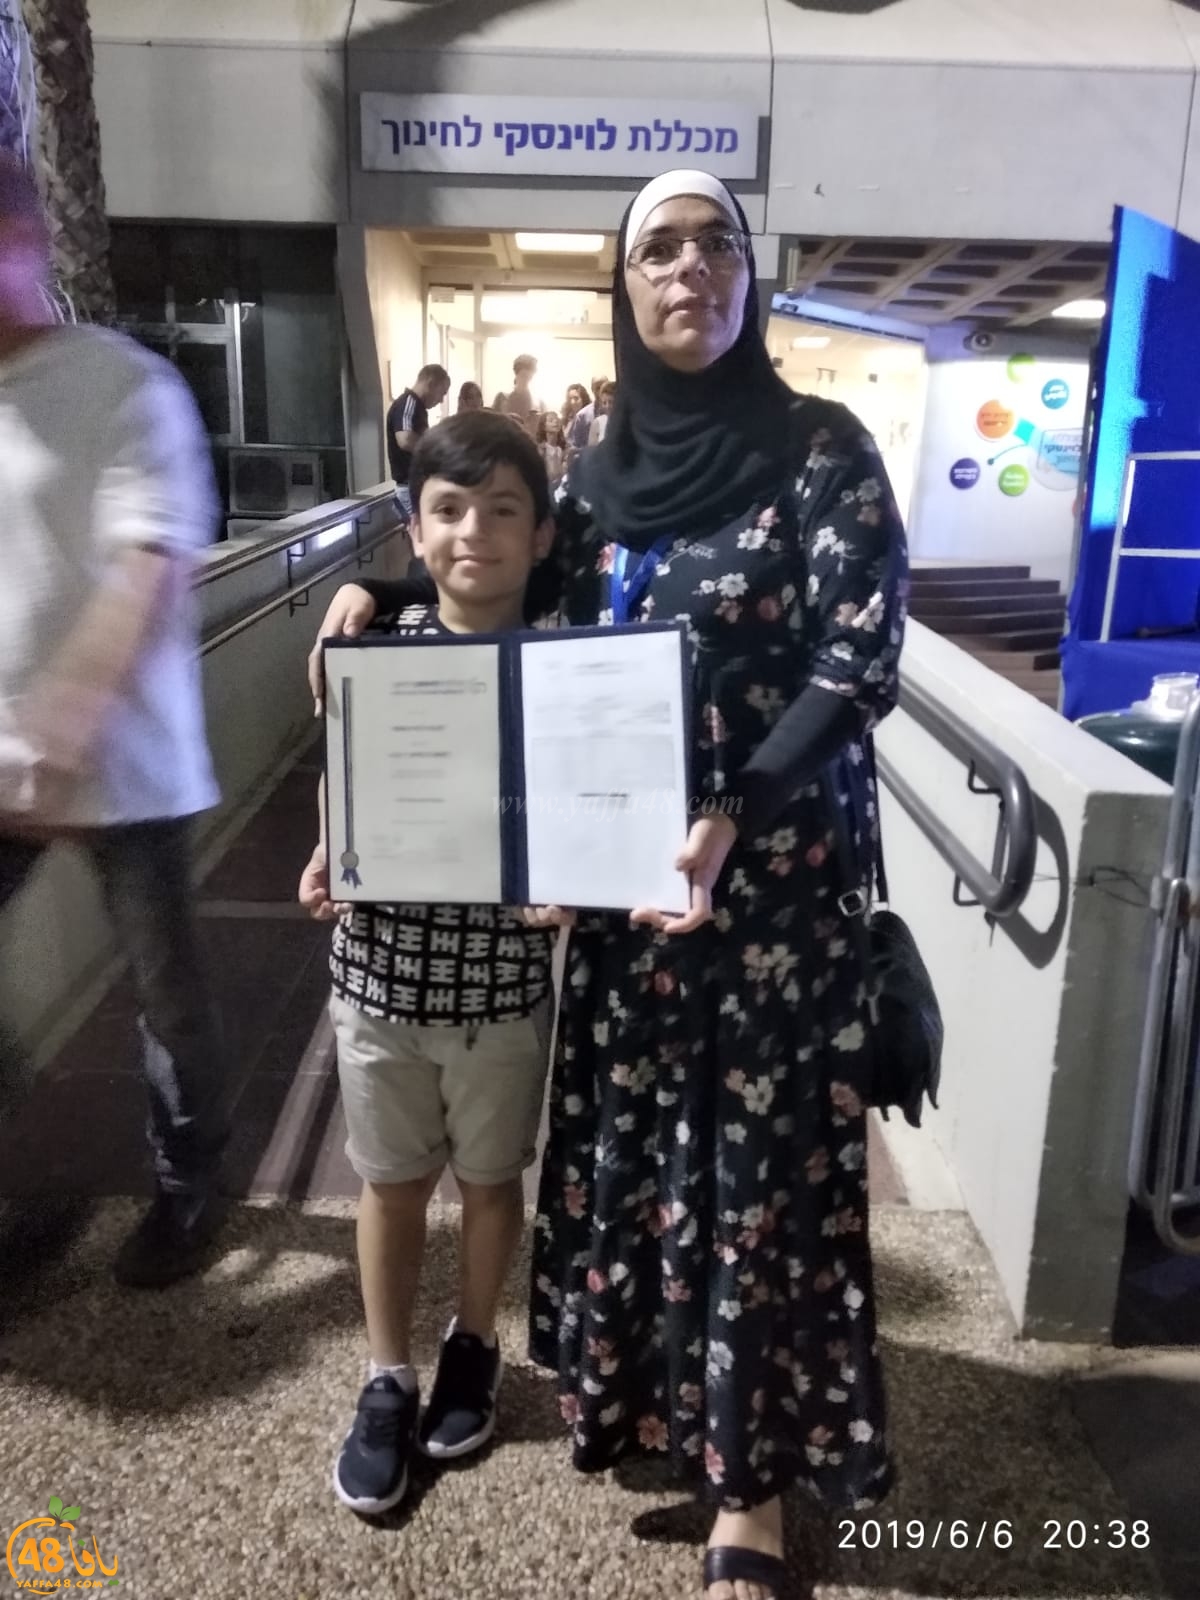 مبروك: المربية هالة أحمد أبو لسان من يافا تحصل على درجة الماجستير في التربية